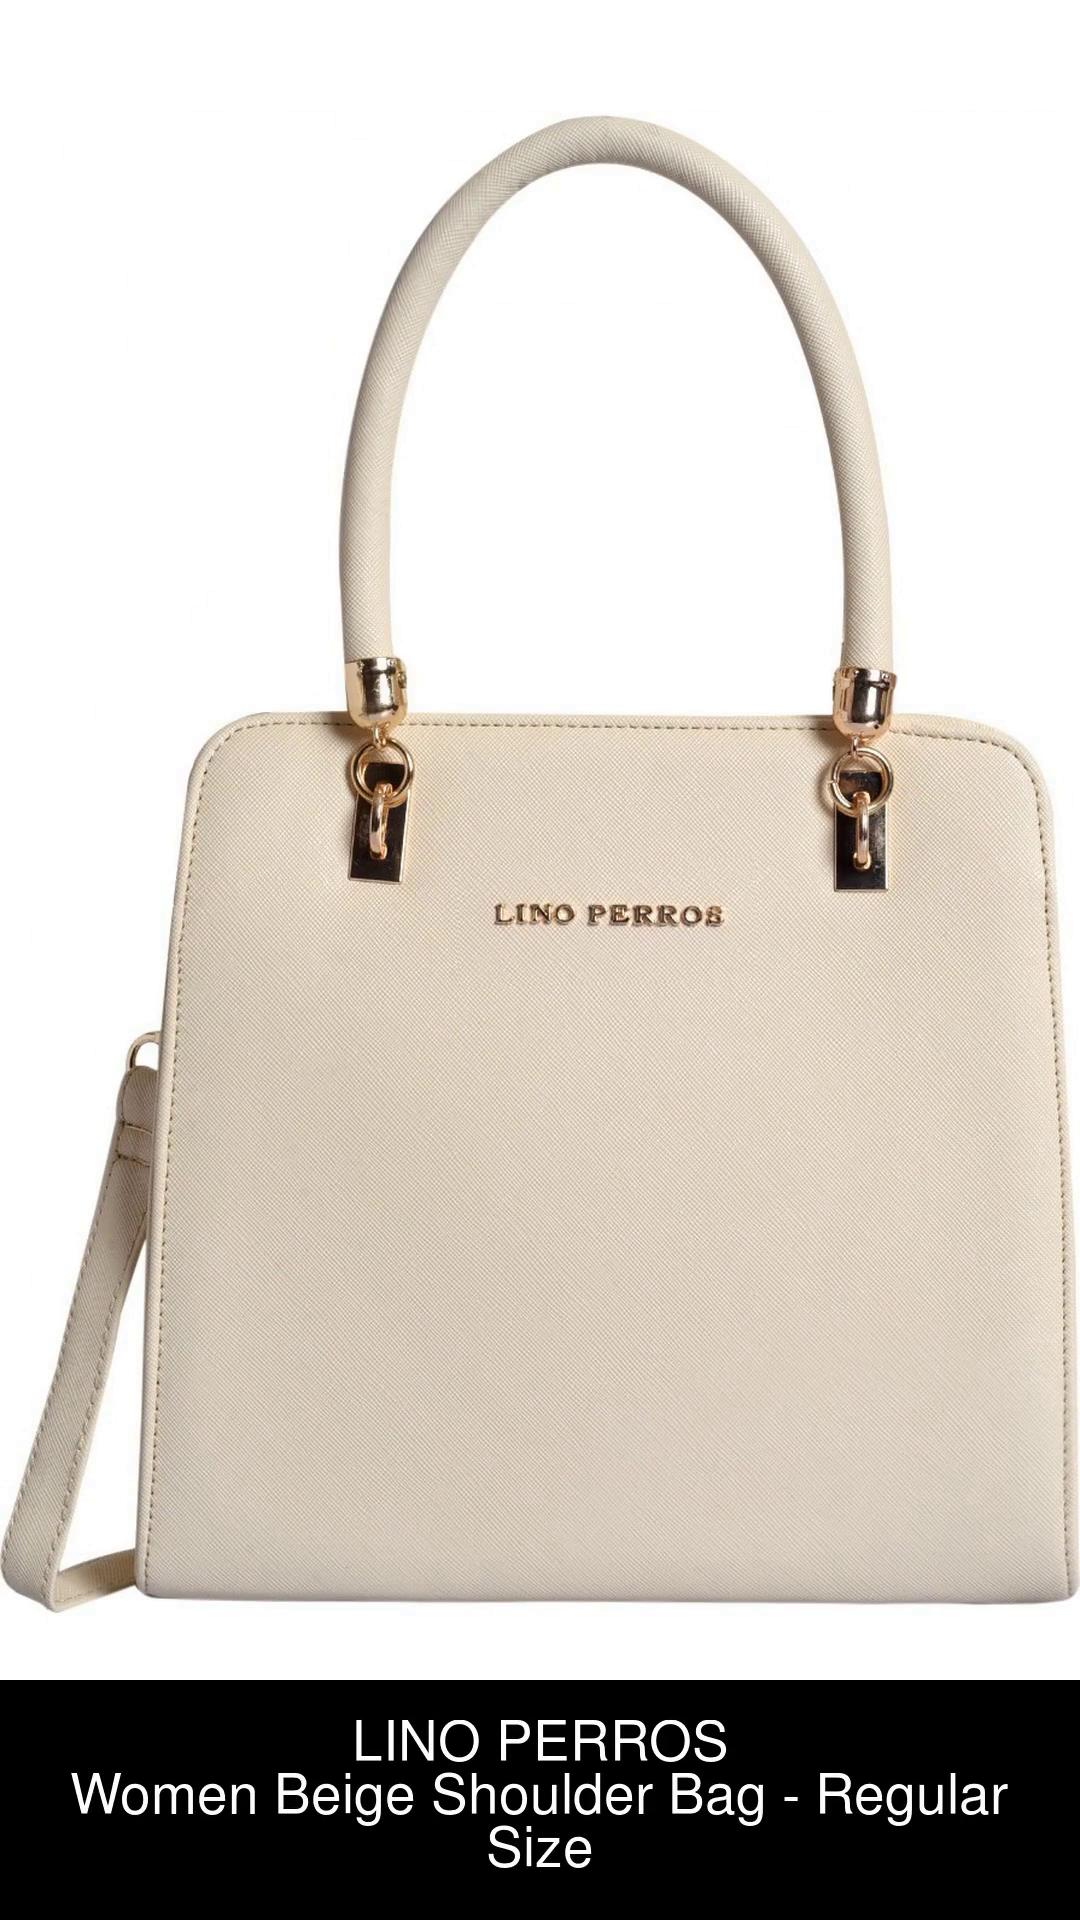 Buy LINO PERROS Women Beige Shoulder Bag Beige Online @ Best Price in India